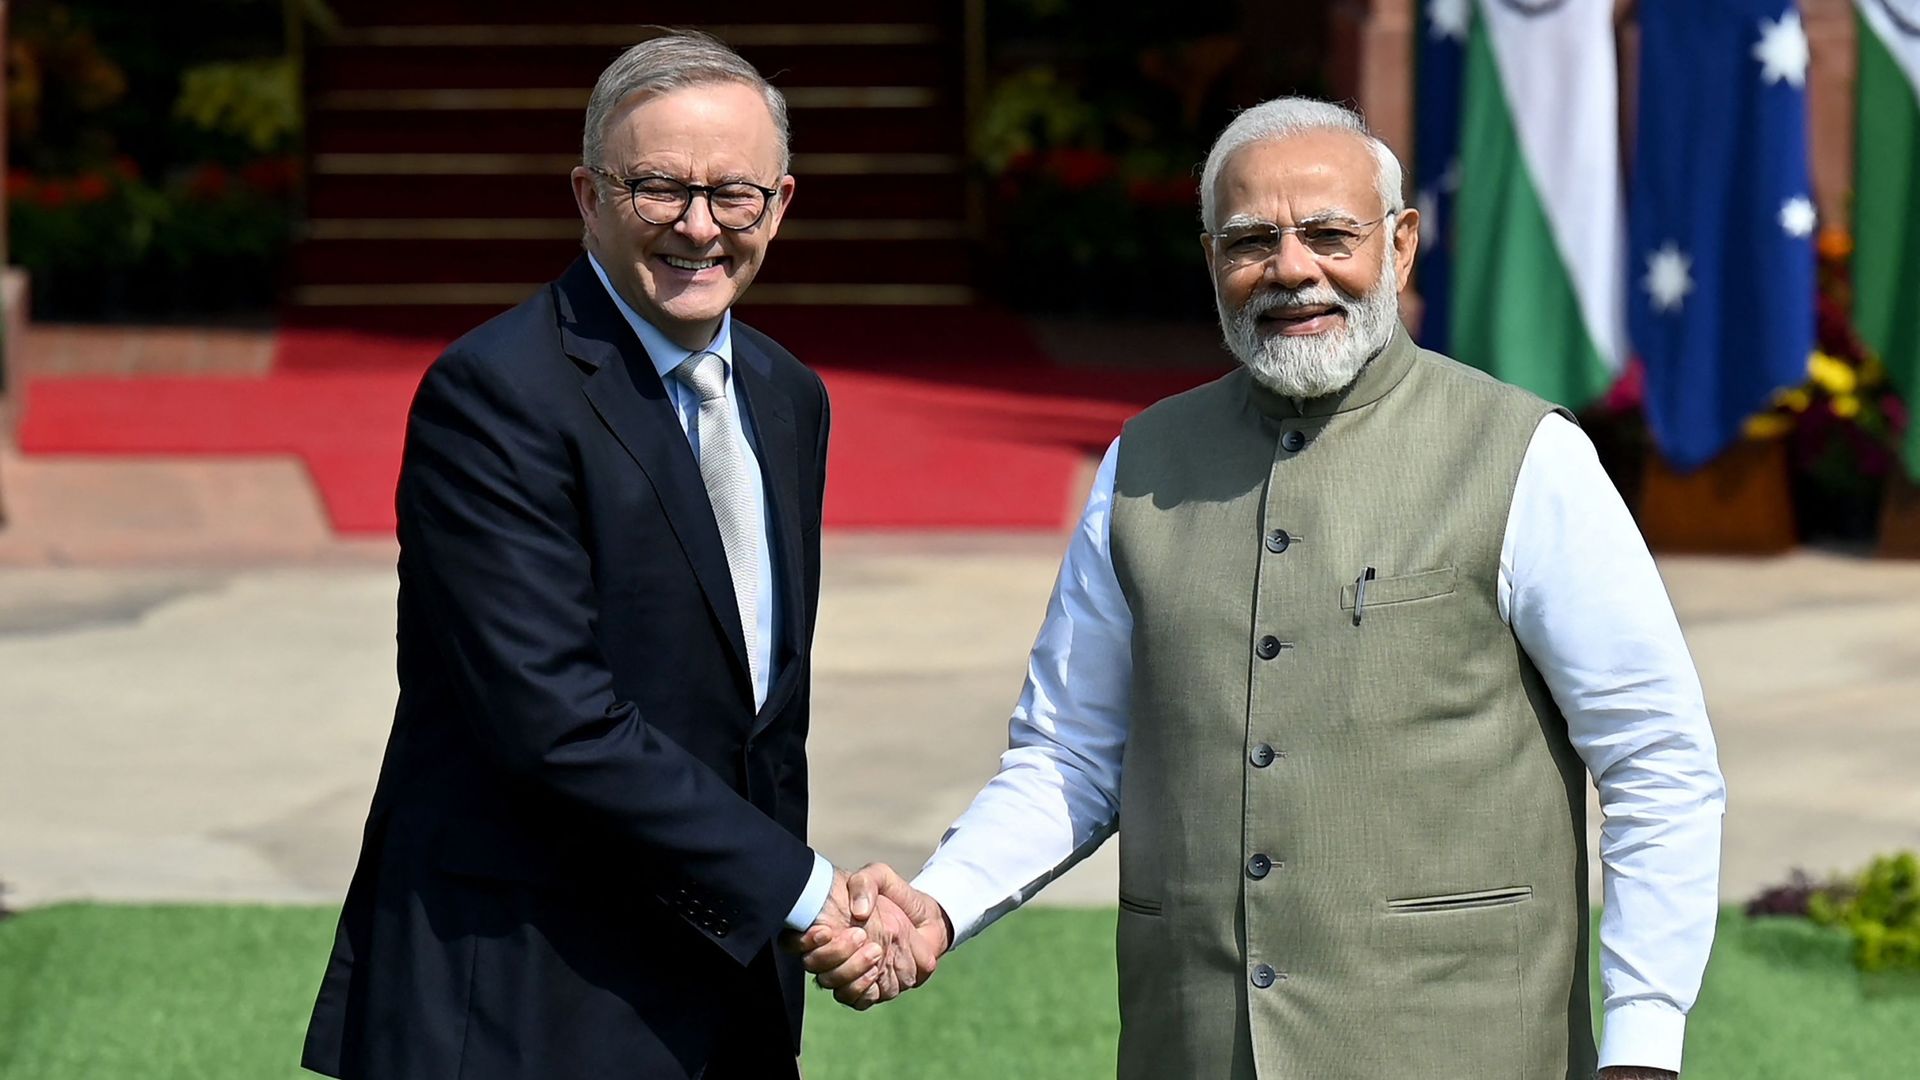 Le Premier ministre indien Narendra Modi serre la main du Premier ministre australien Anthony Albanese avant une réunion à Hyderabad House, à New Delhi, le 10 mars 2023.